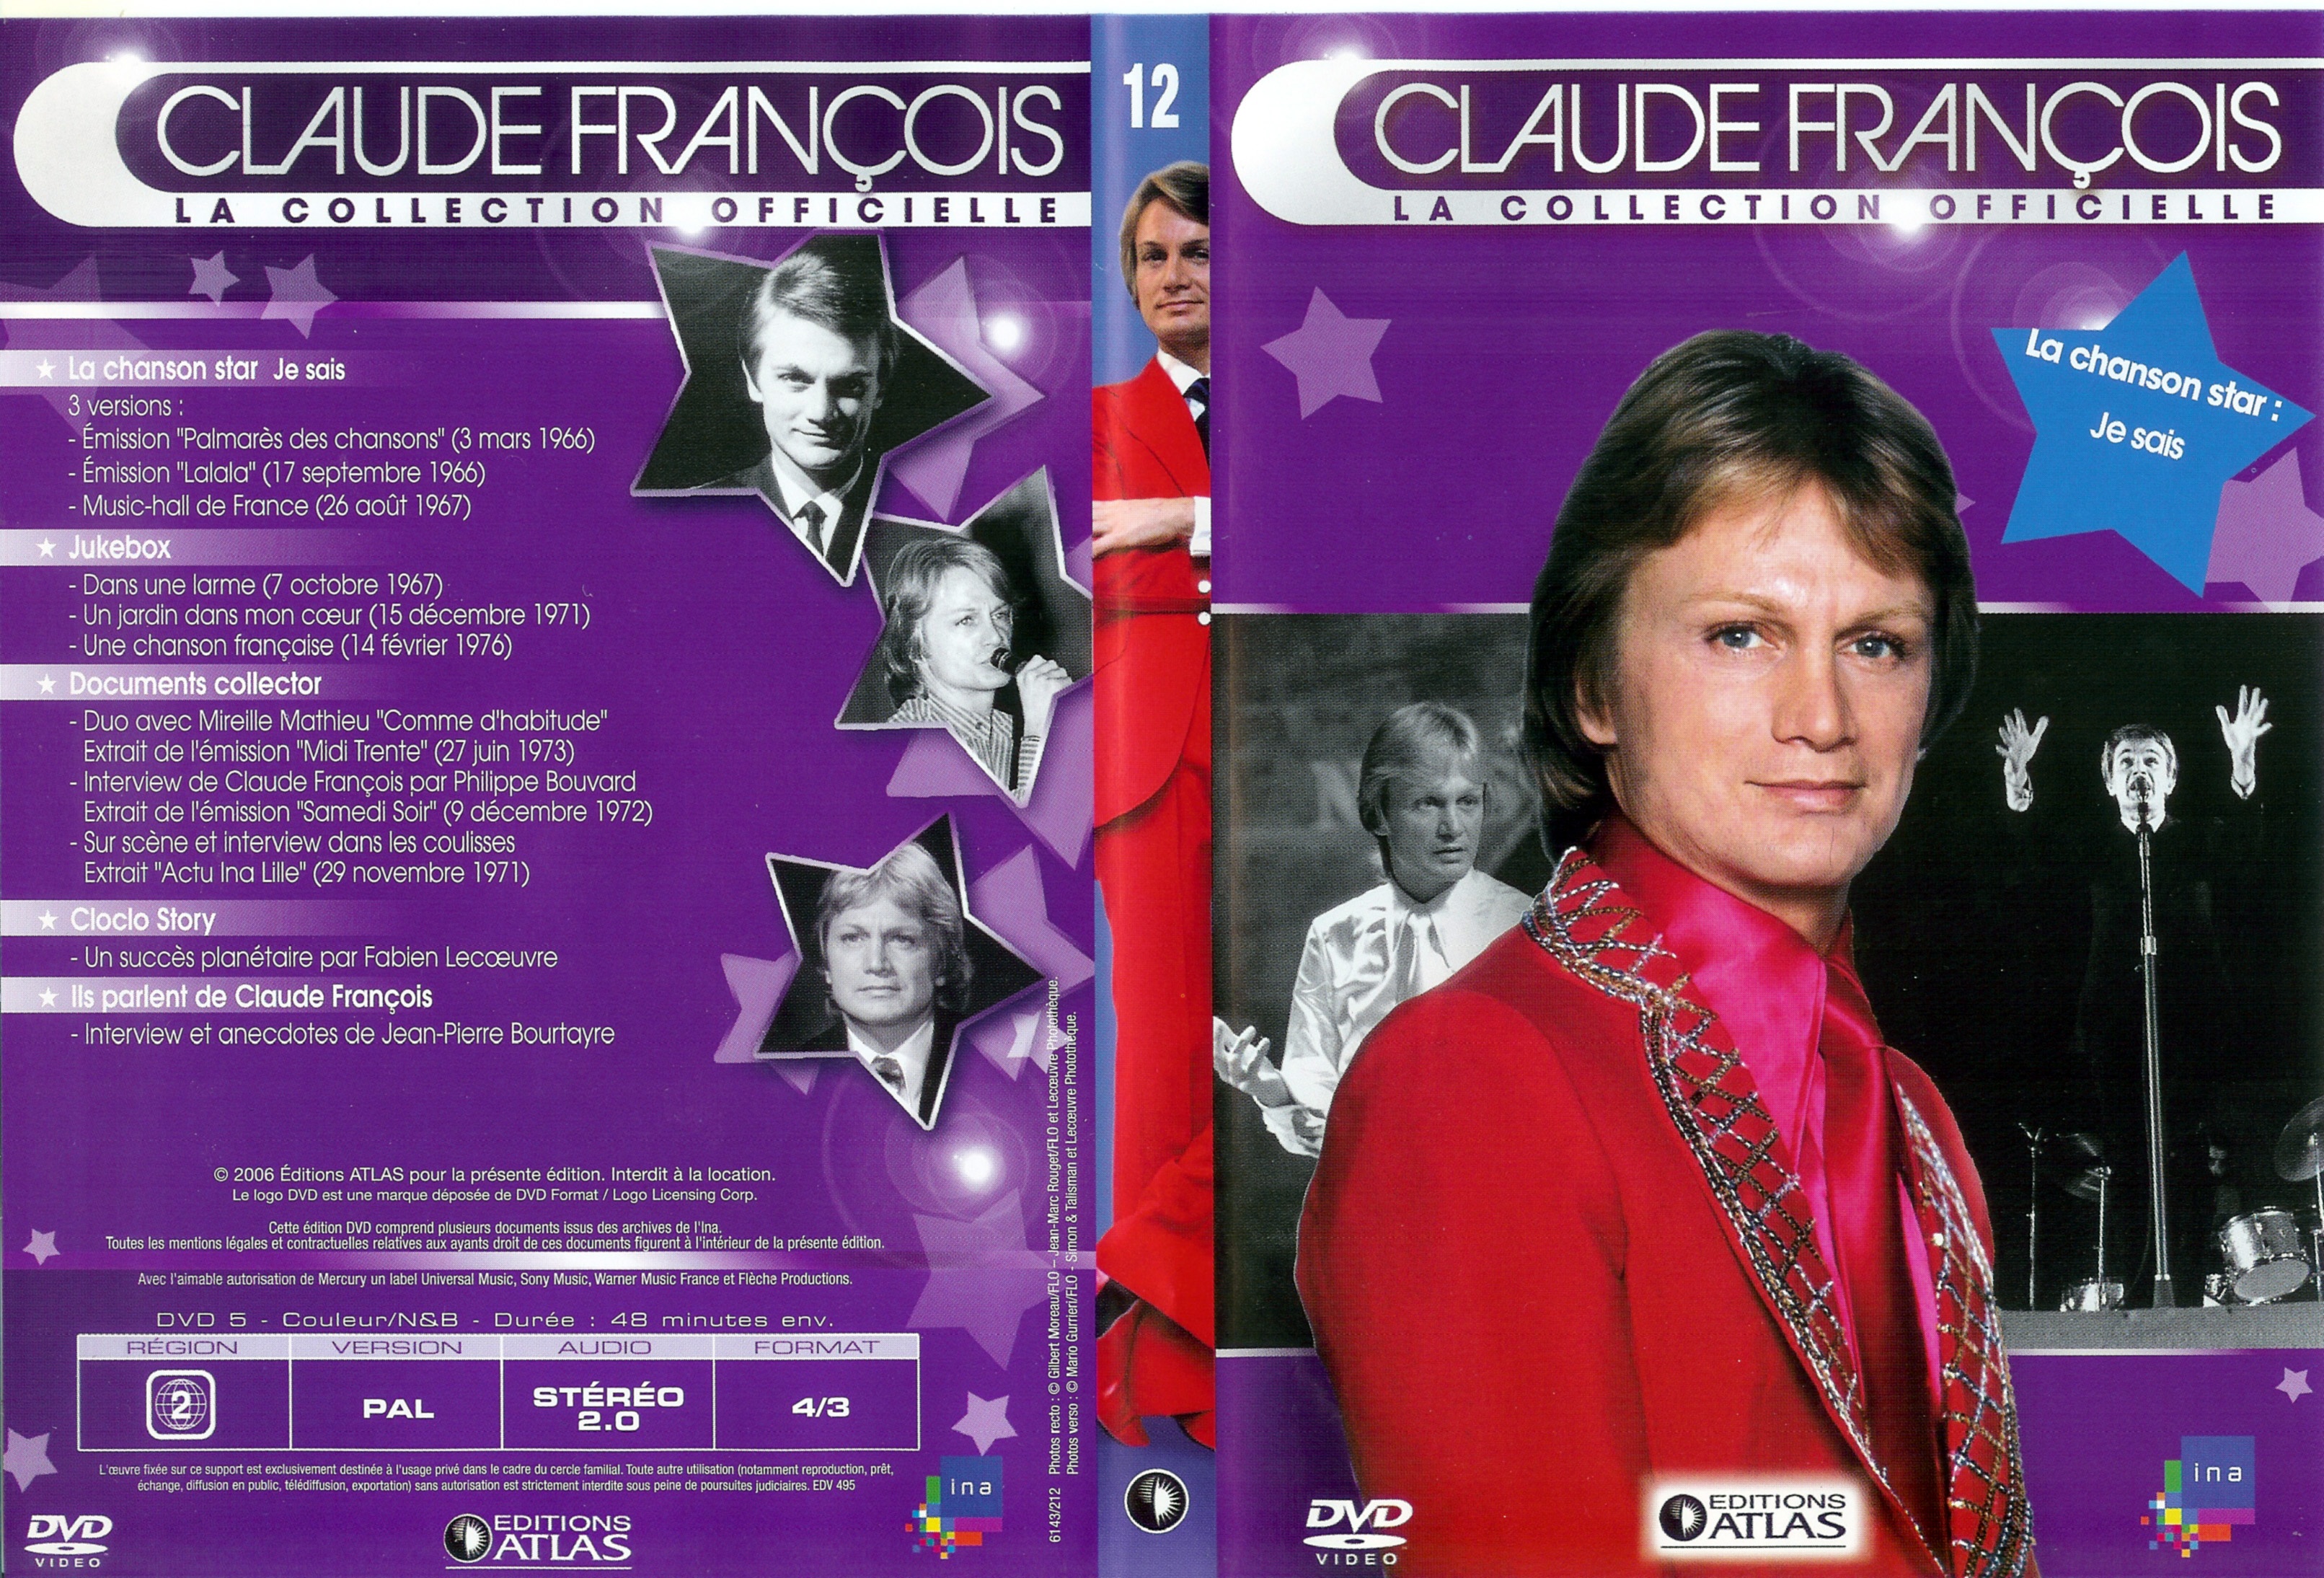 Jaquette DVD Claude Francois la collection officielle vol 12